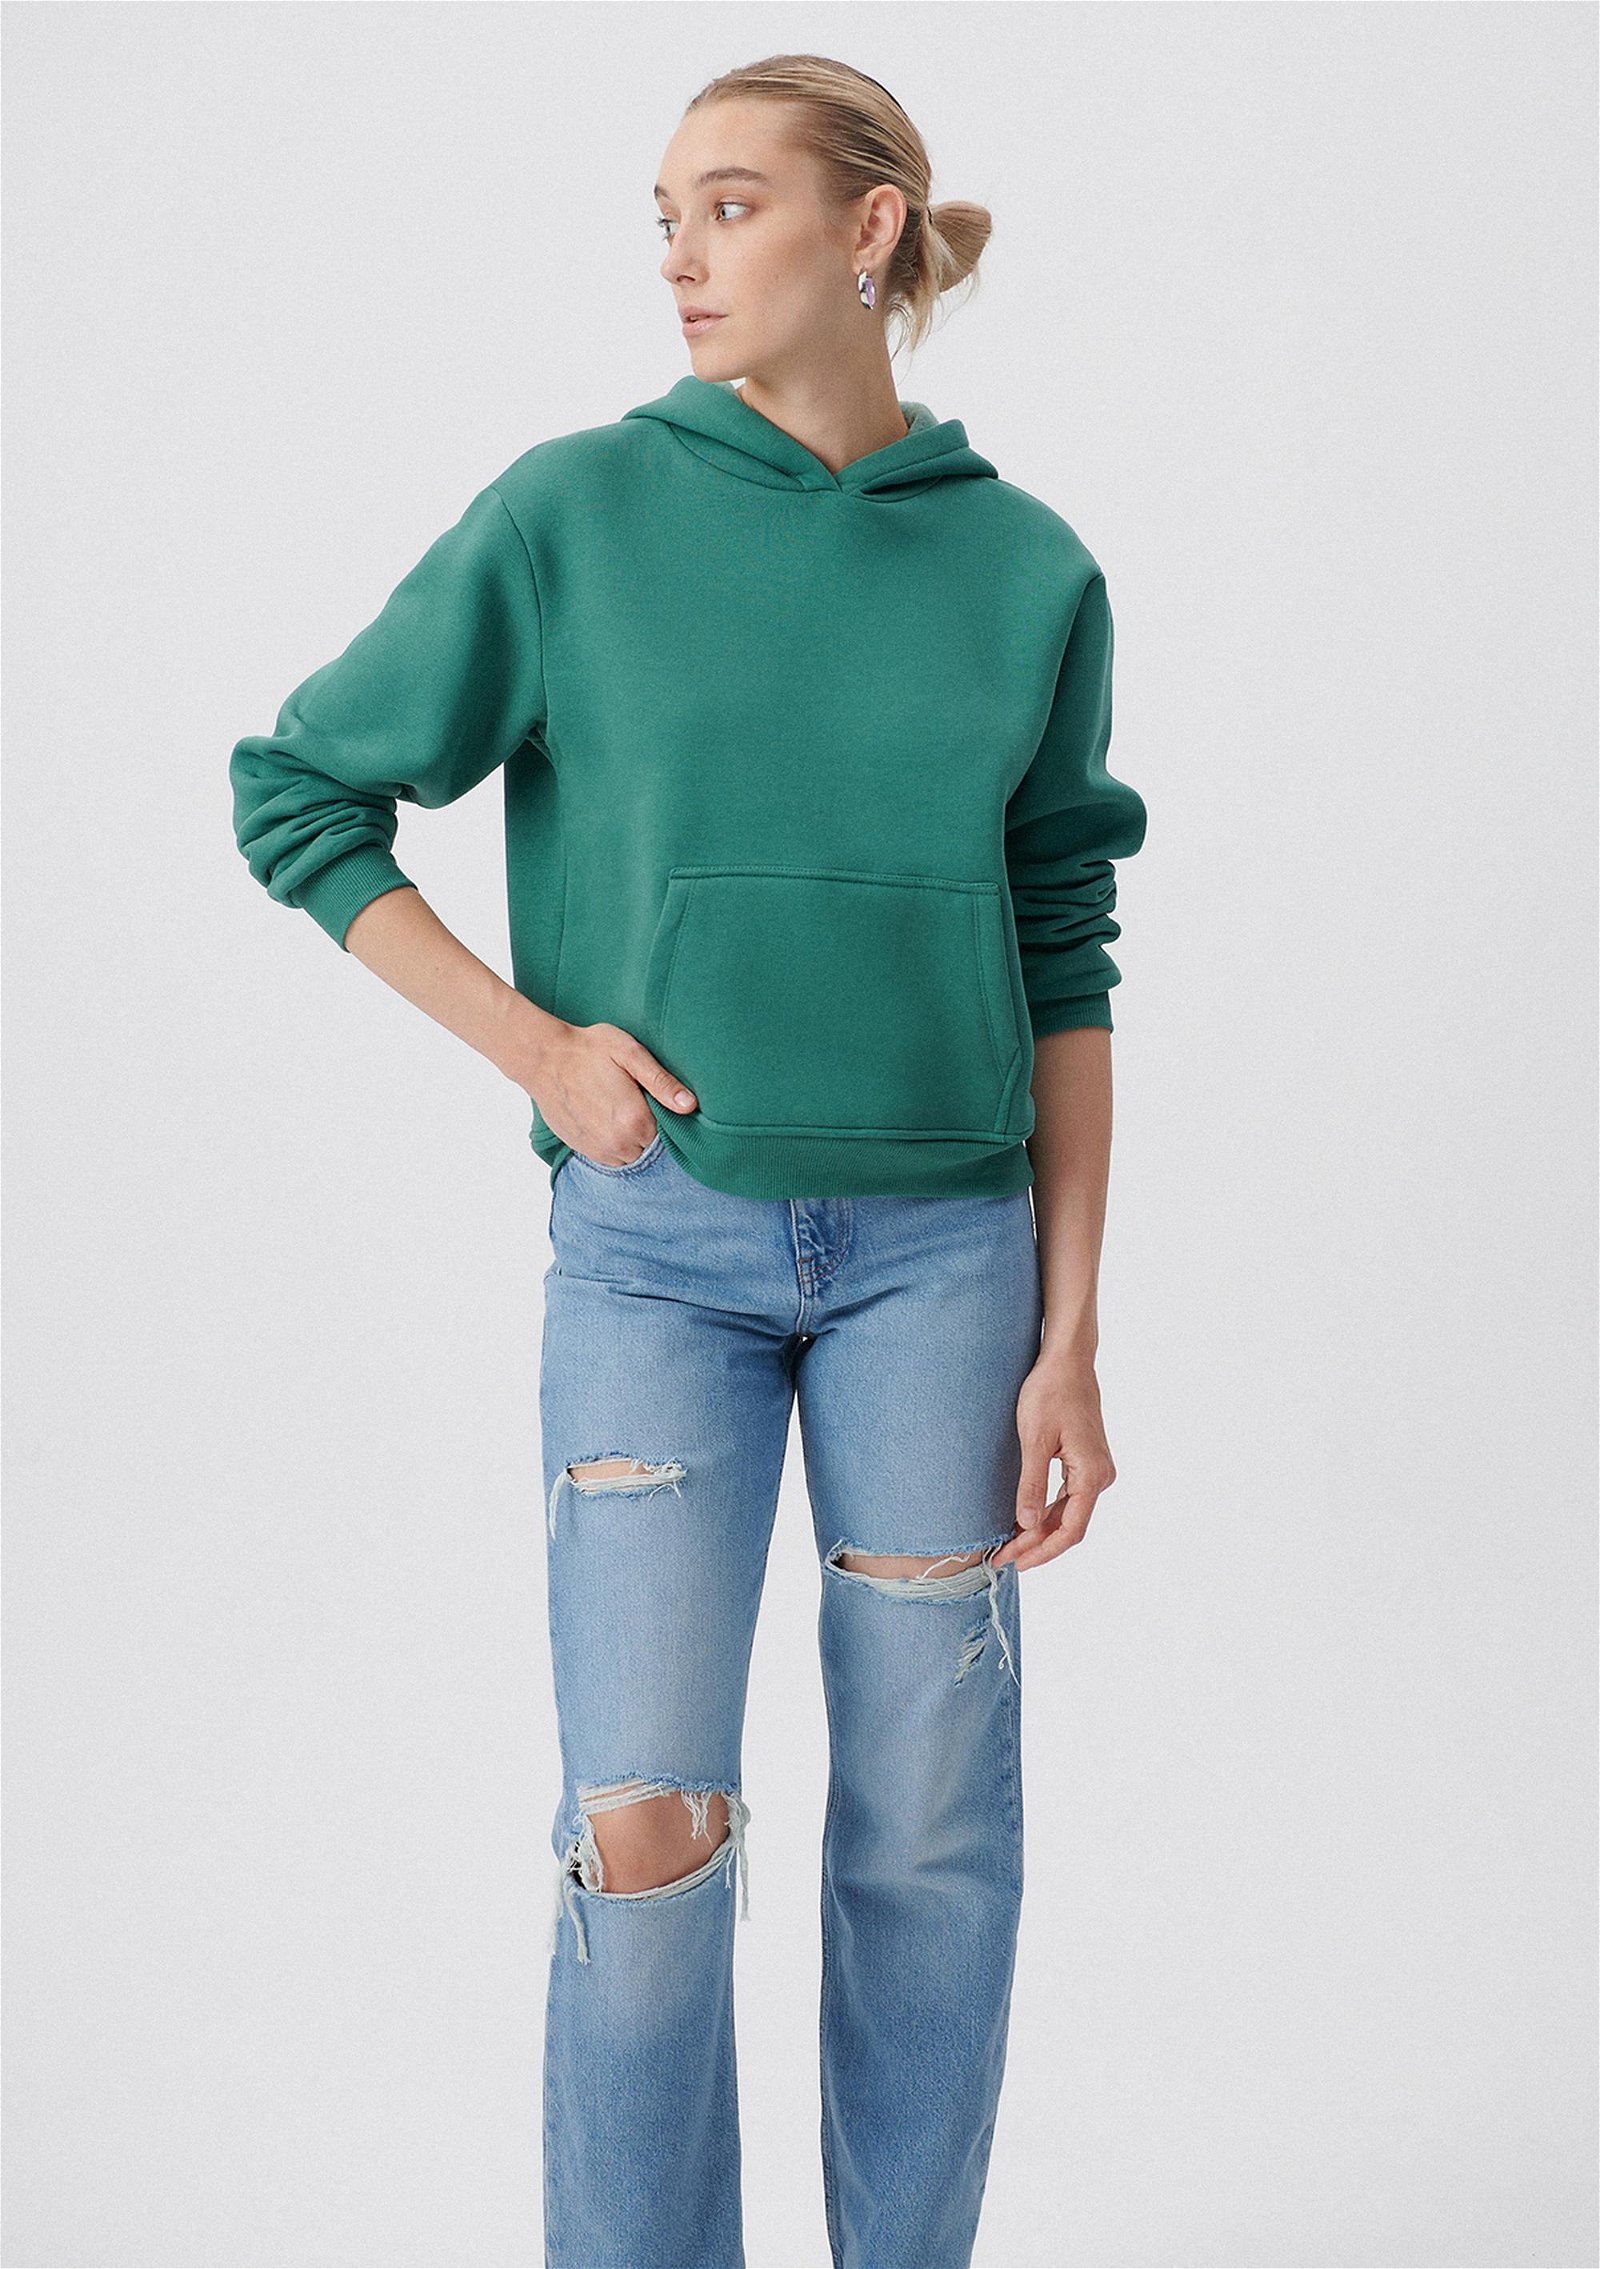 Mavi Kapüşonlu Yeşil Basic Sweatshirt 167299-71870